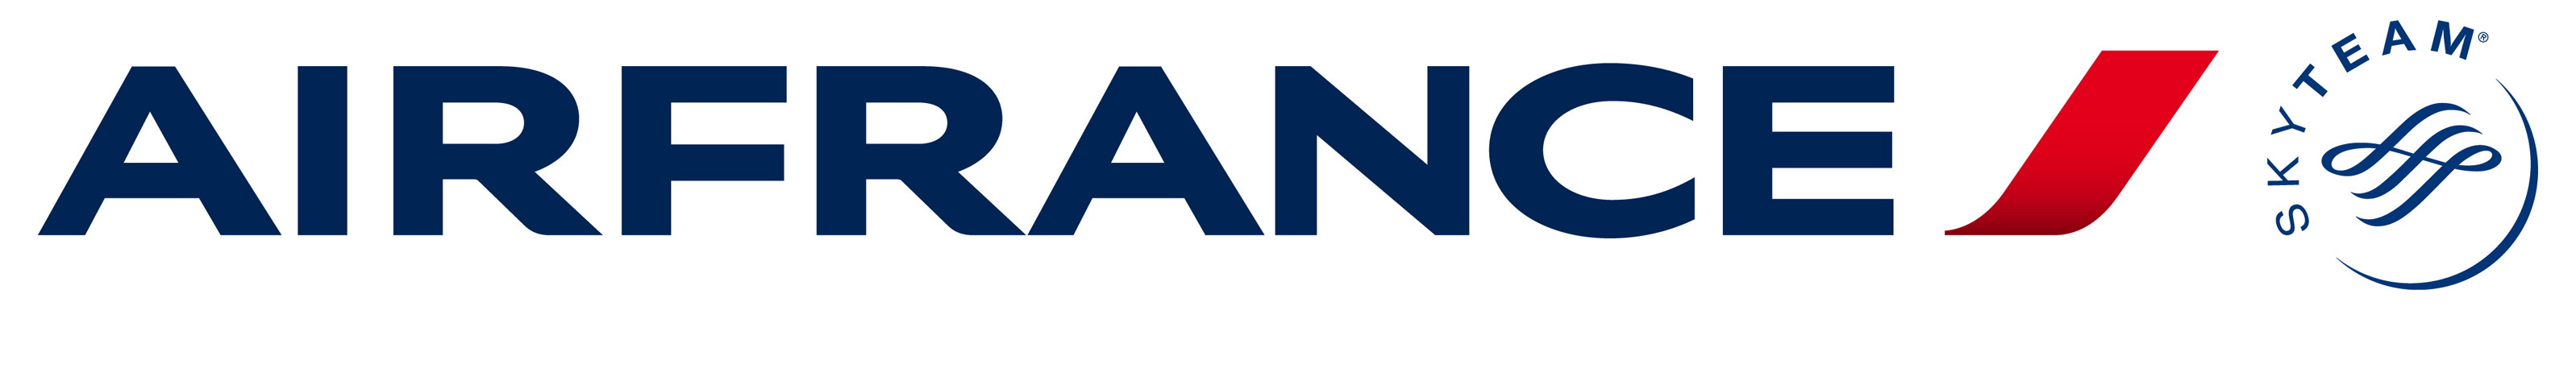 [Image: Air-France-logo.jpg]